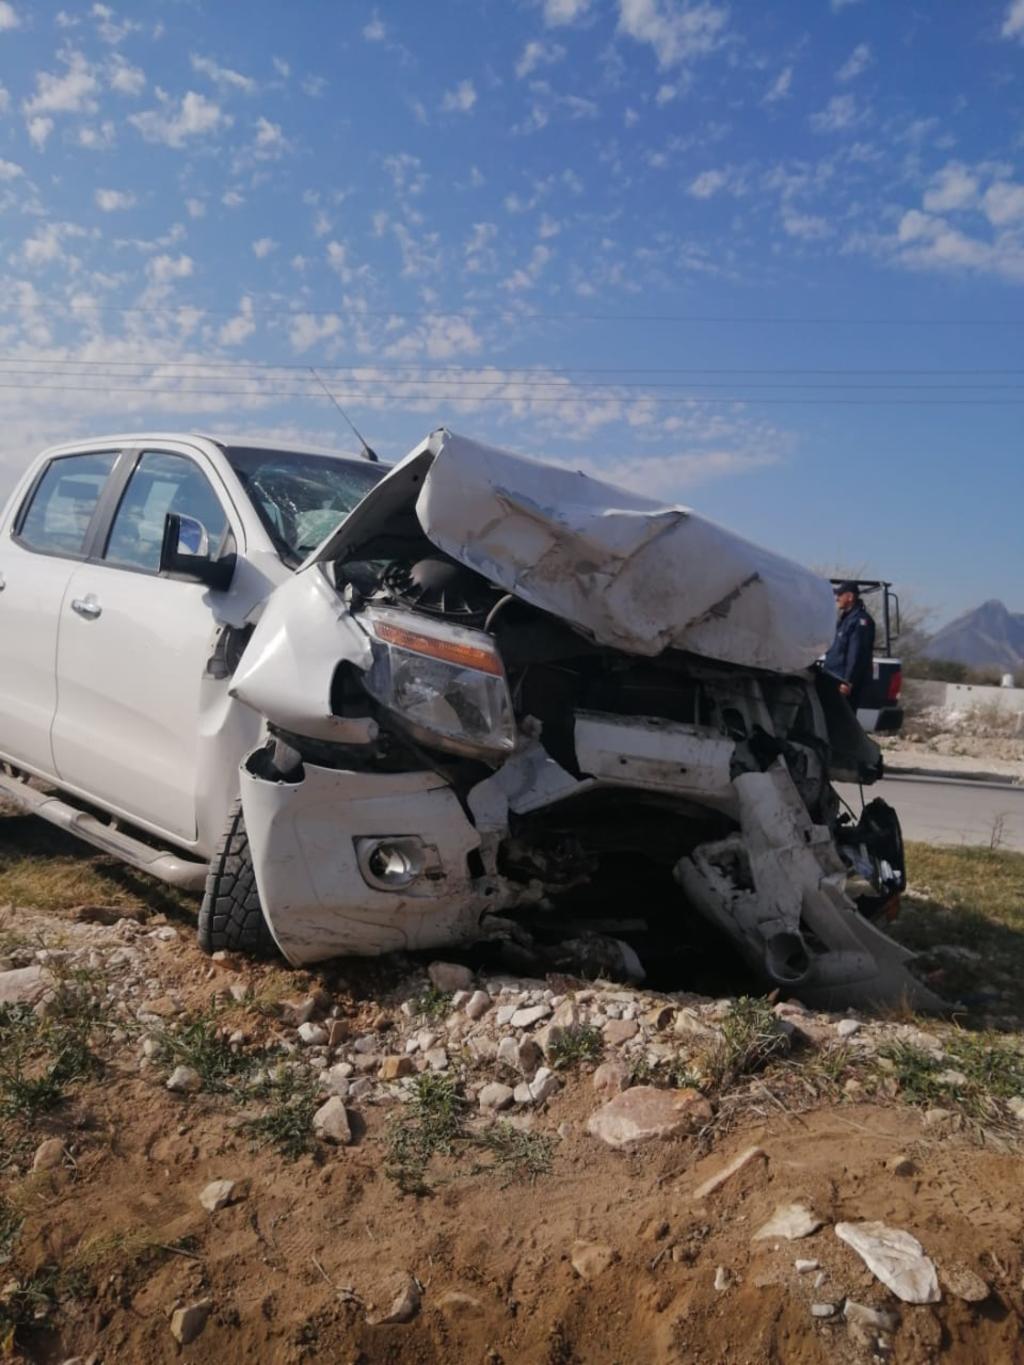 Uno de los vehículos involucrados en el accidente es de la marca Ford, línea Ranger, modelo 2015, color blanco, con placas de circulación del estado de Durango.

(EL SIGLO DE TORREÓN)